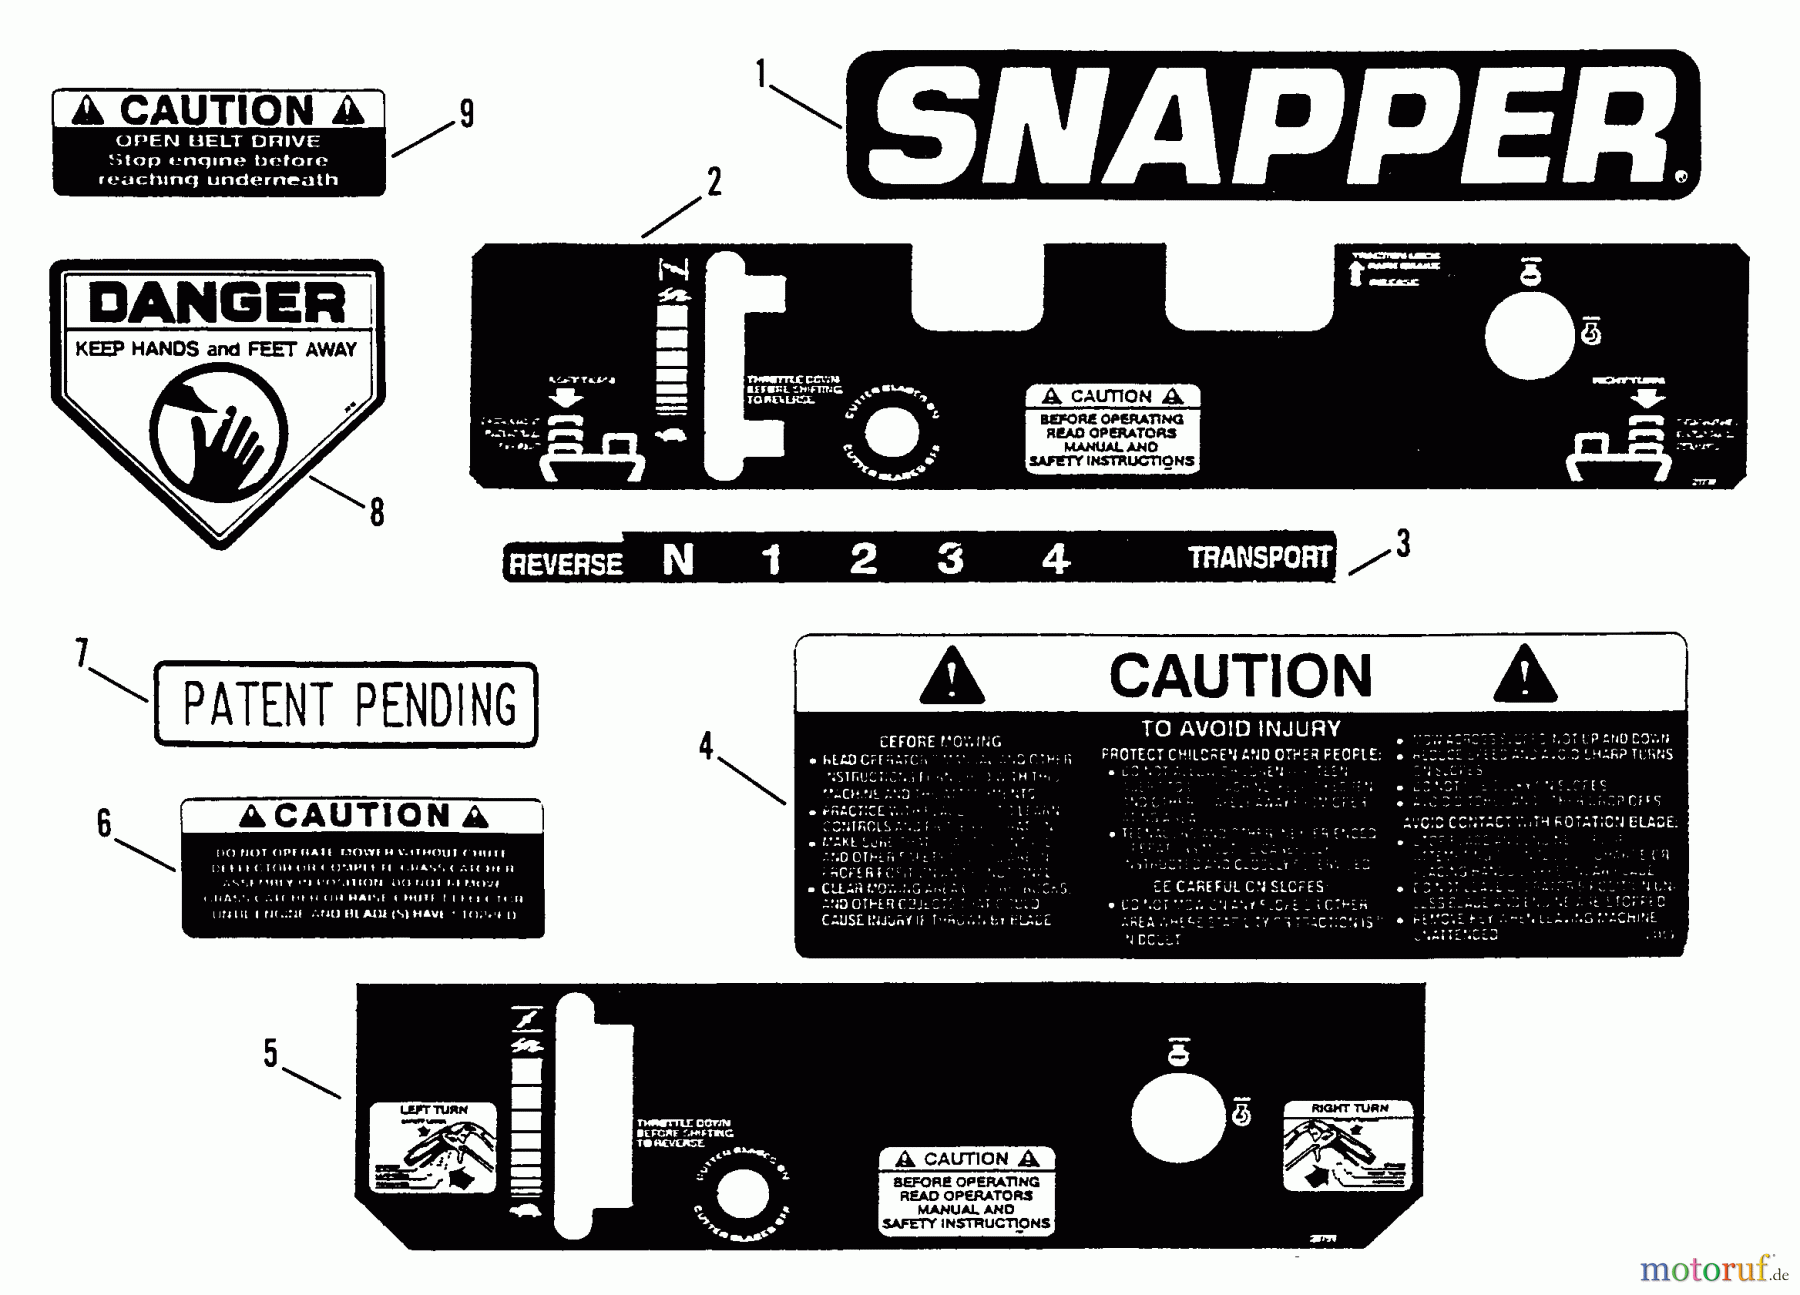  Snapper Mähdecks PMA7524 - Snapper 52